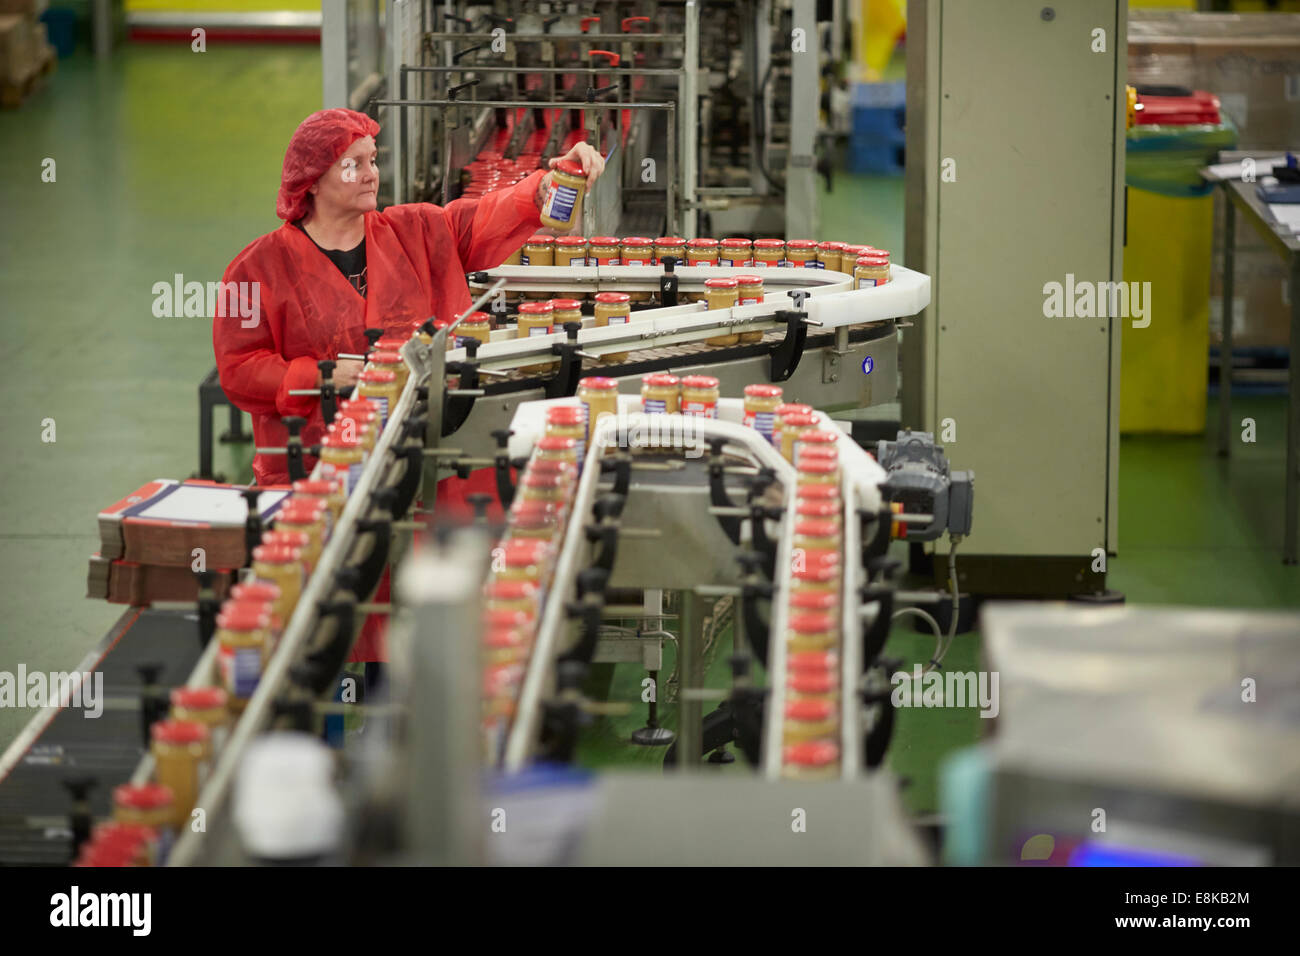 Burro di arachidi la fabbricazione di impianti di produzione in linea di affari di famiglia nella fabbrica di Duerre inceppamenti del magazzino Wythenshawe, Manchester, Inghilterra, Regno Unito. Foto Stock